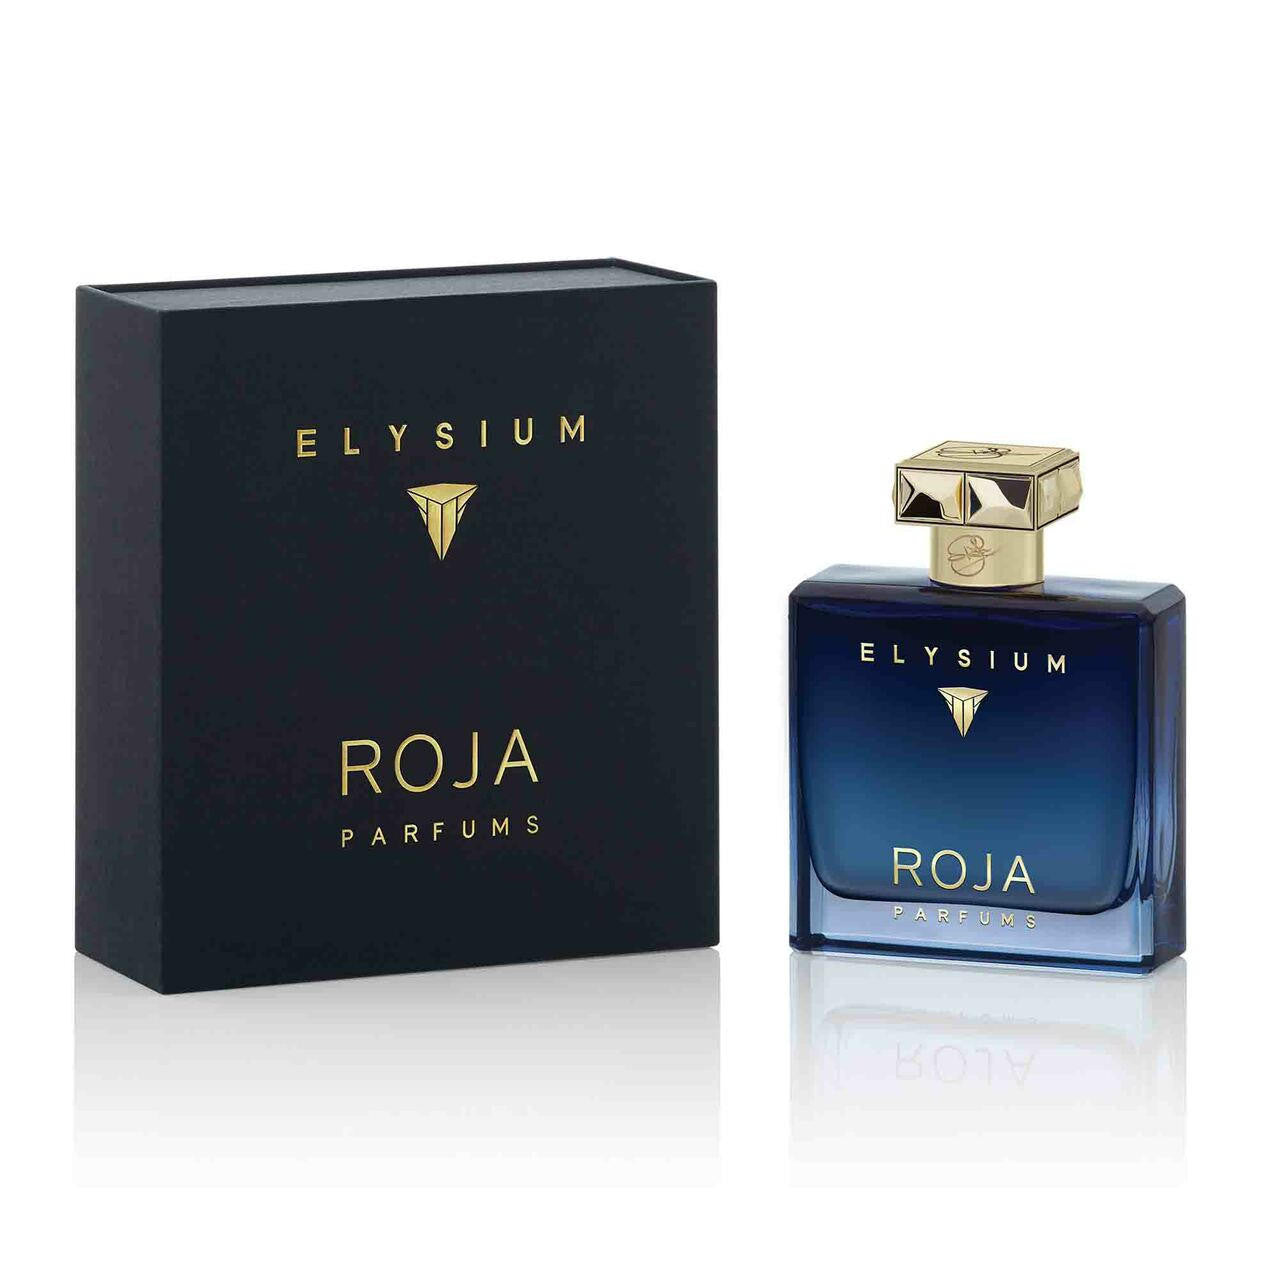 ROJA Roja Pour Homme Elysium Parfum Cologne 100ml 